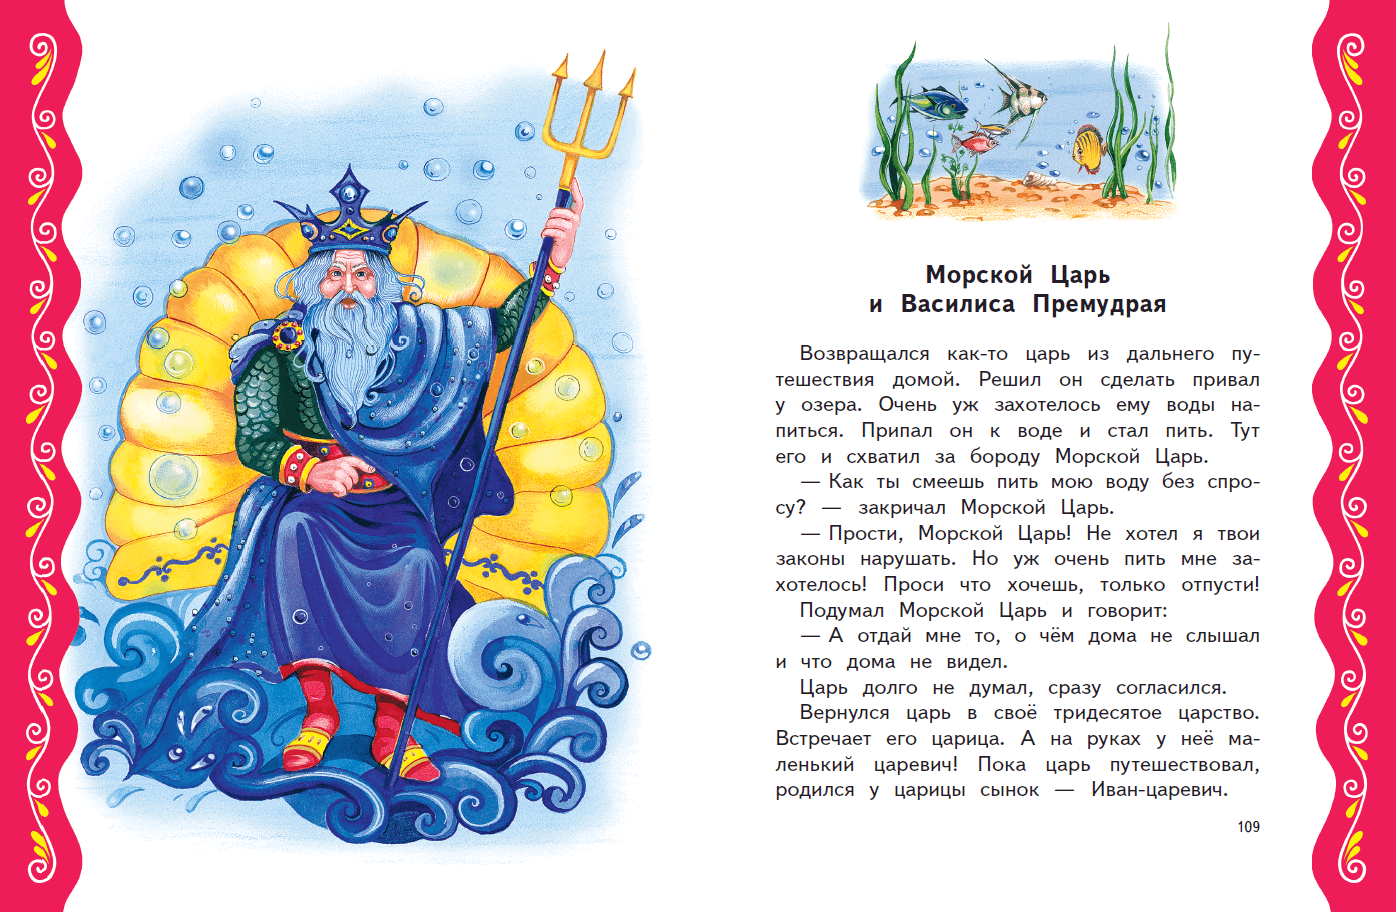 Русские народные сказки : морской царь и василиса премудрая